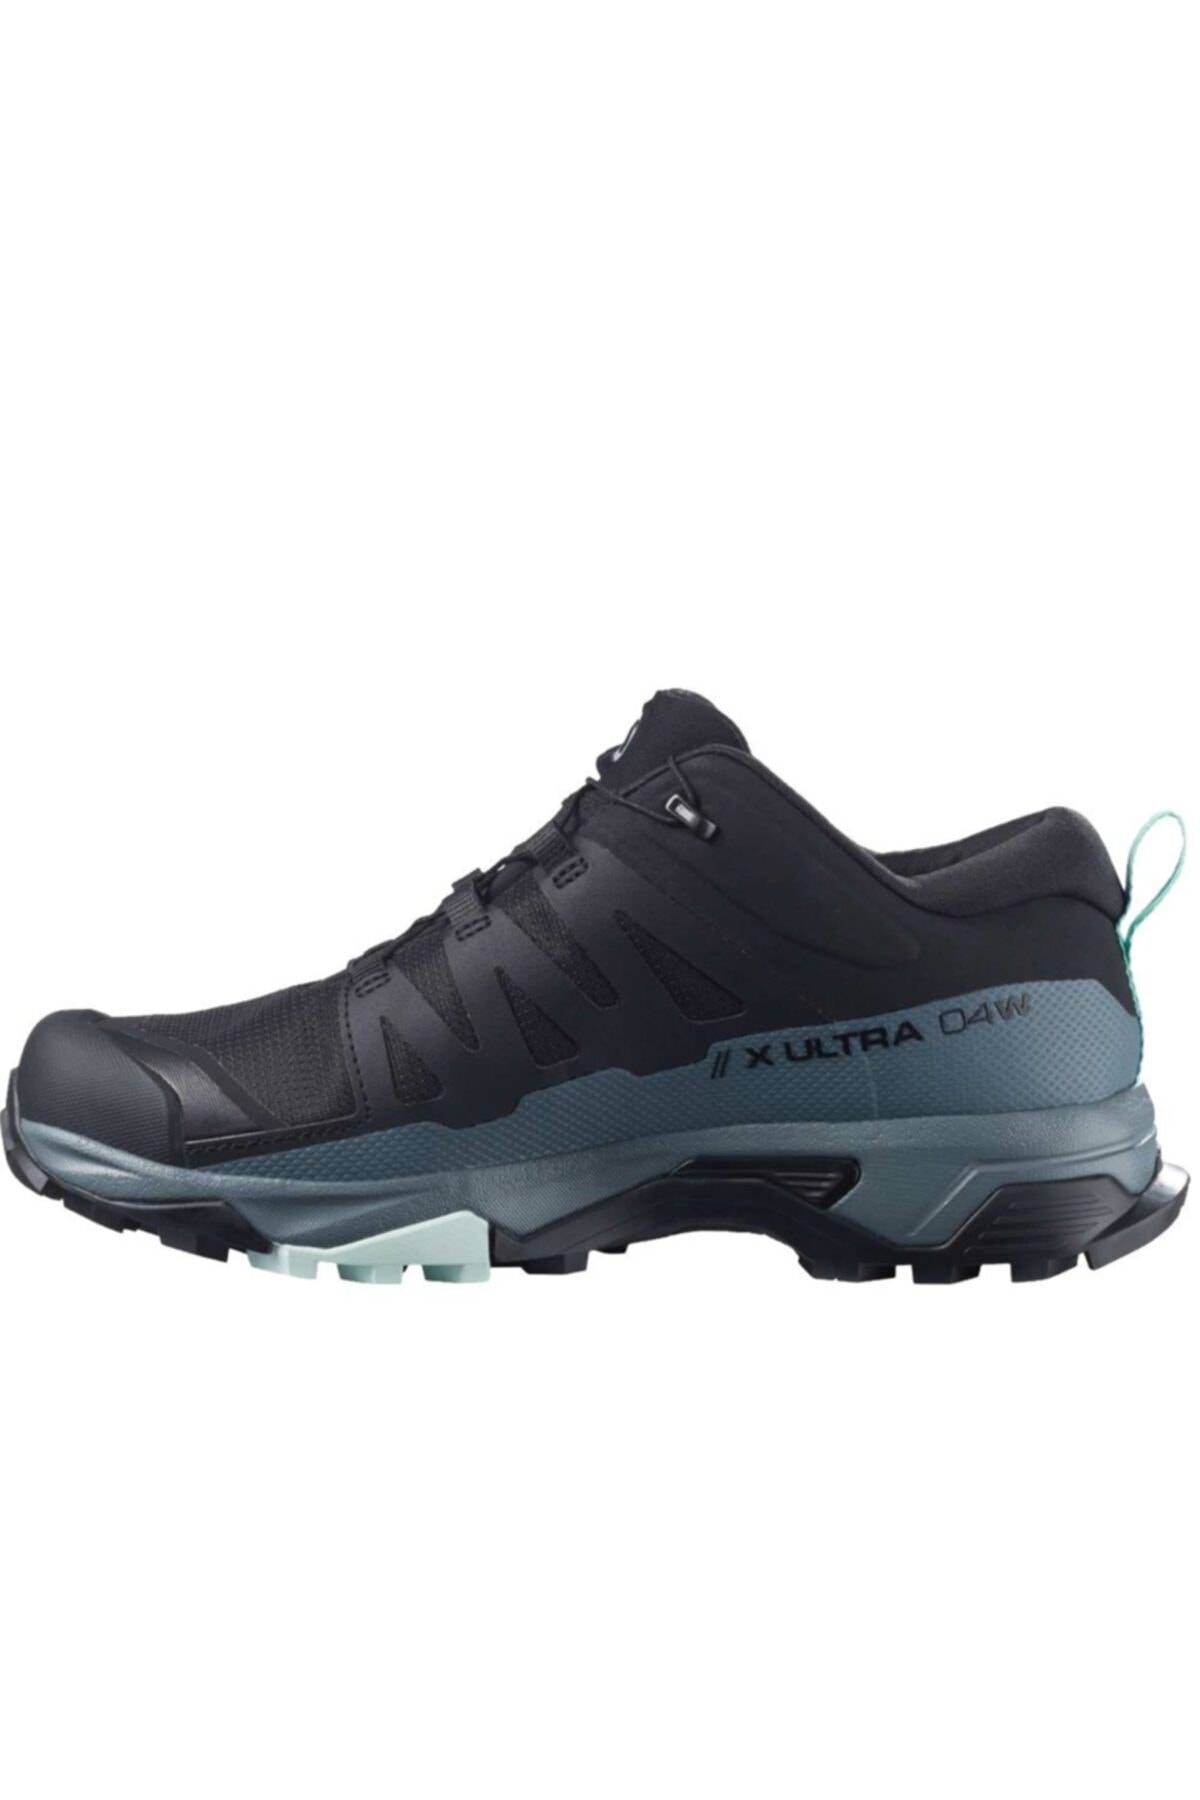 X Ultra 4 Gtx Kadın Outdoor Ayakkabı L41289600-Siyah-mavi